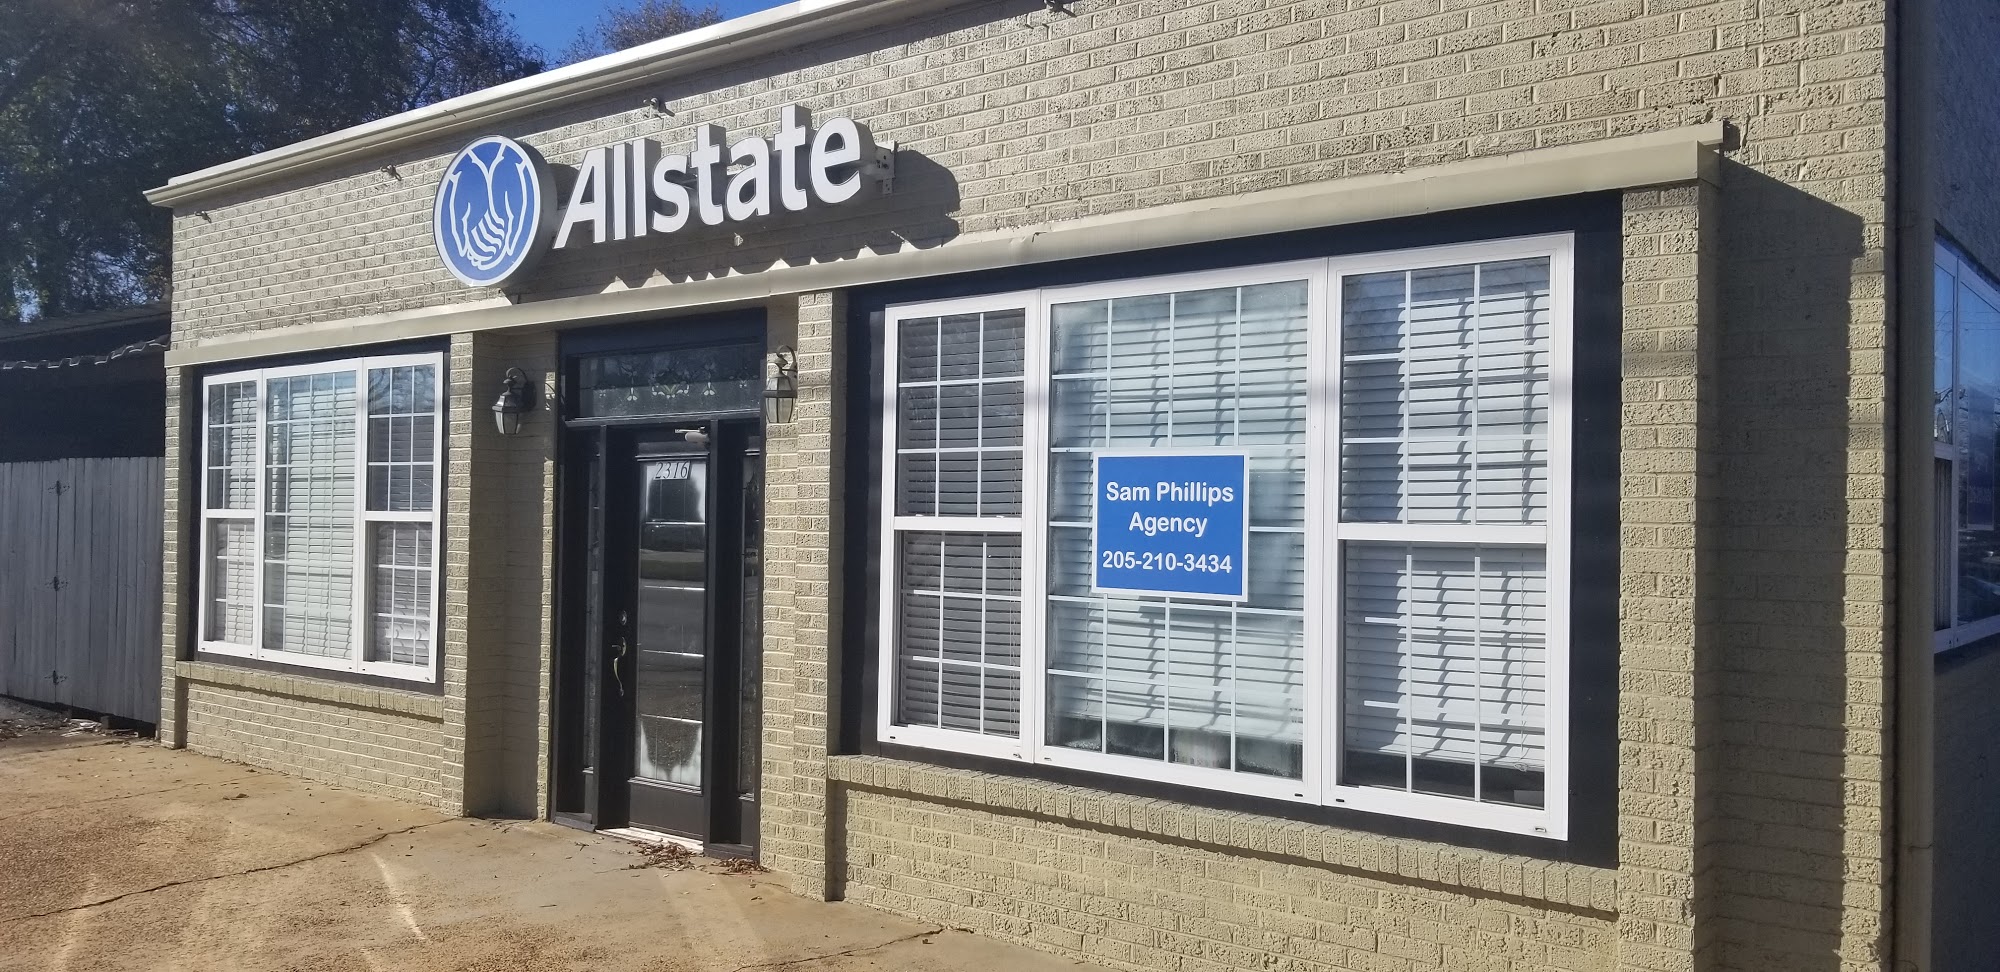 Sam Phillips: Allstate Insurance